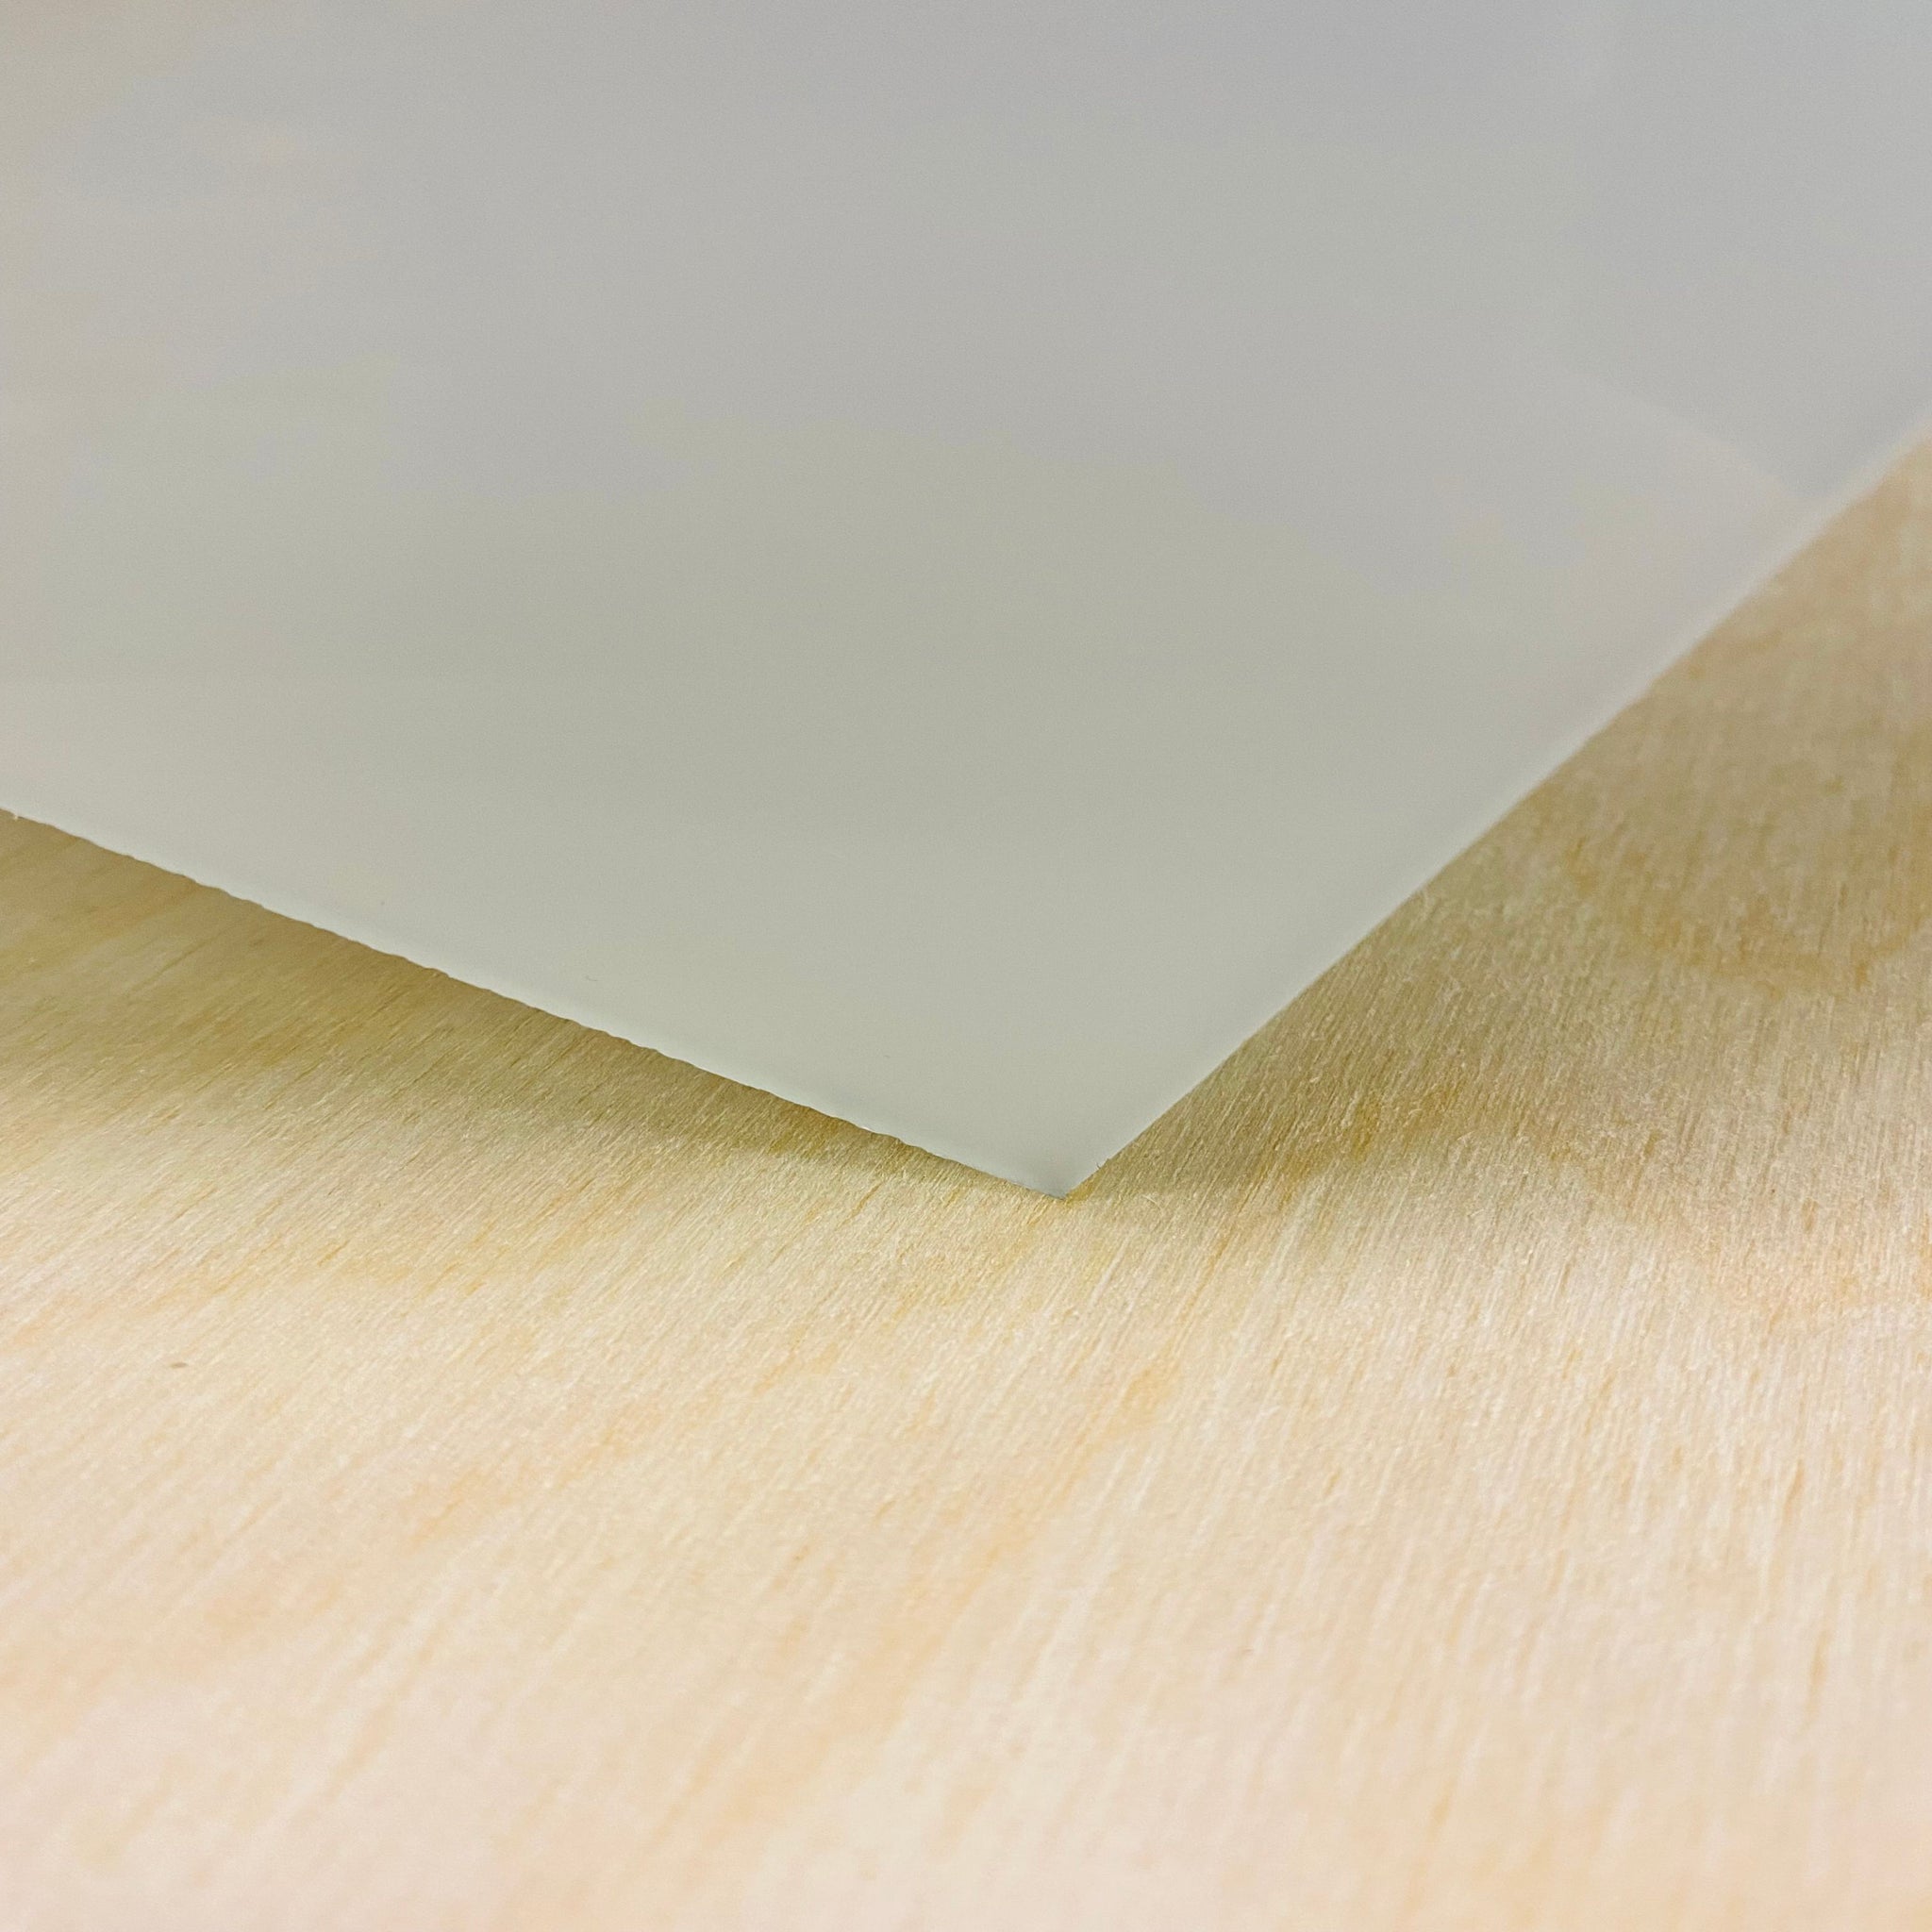 Styrofoam Sheet 2 x 12 x 36 - White - Case of 20